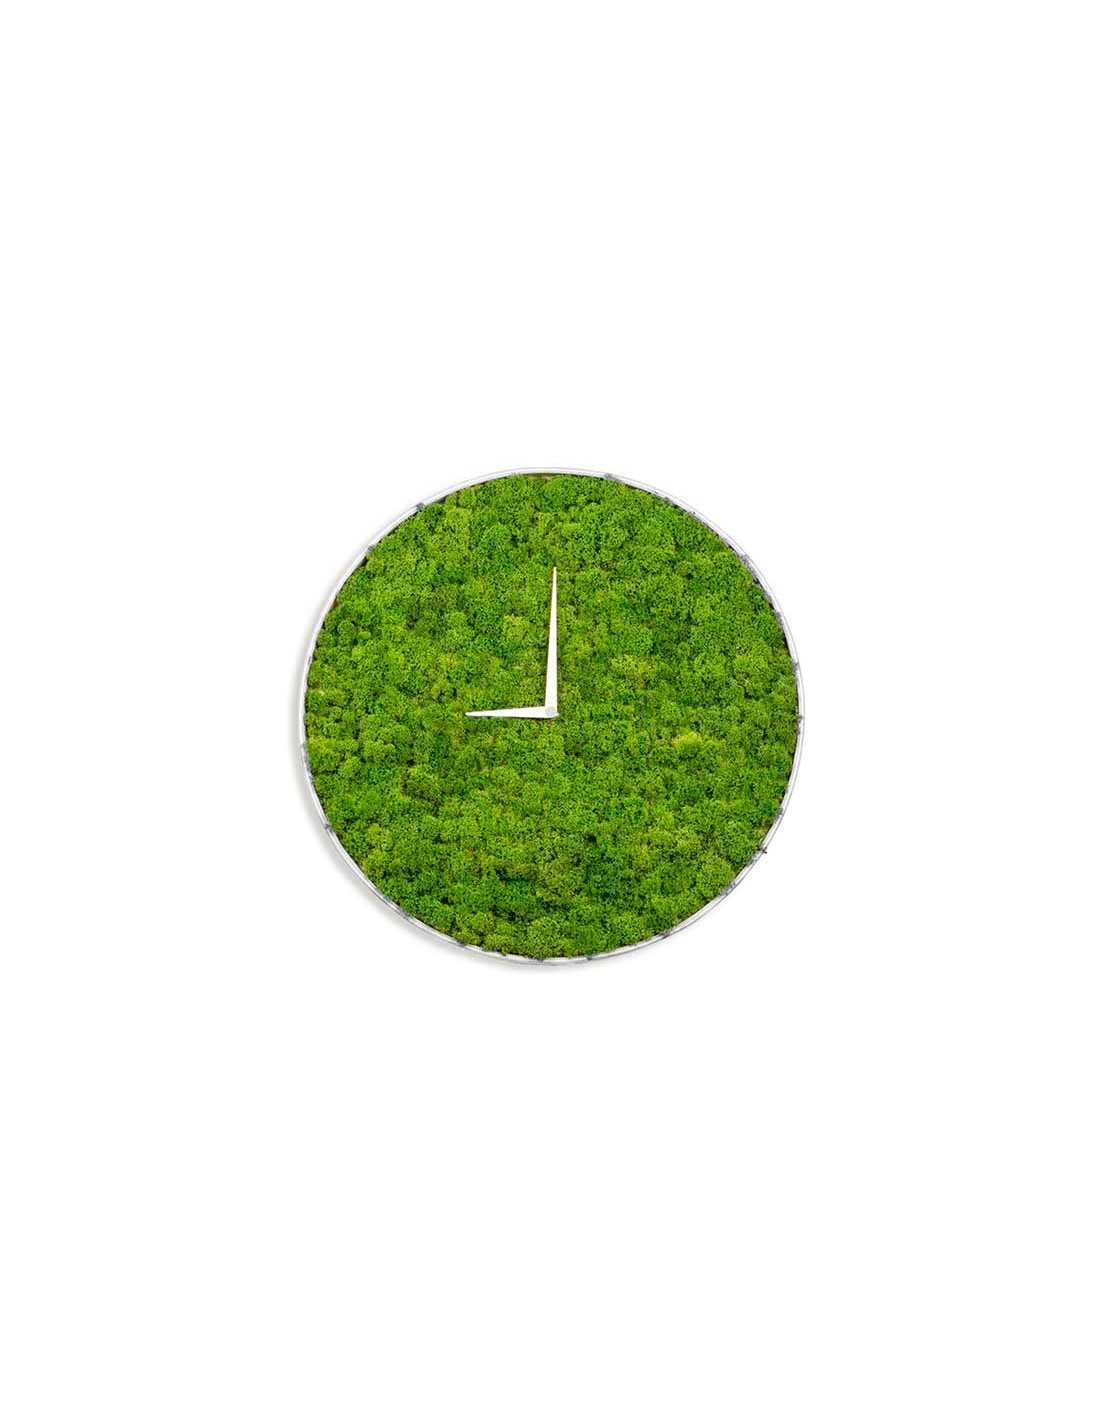 parilla aerolíneas Condensar Reloj de musgo preservado, la forma natural de mirar la hora.